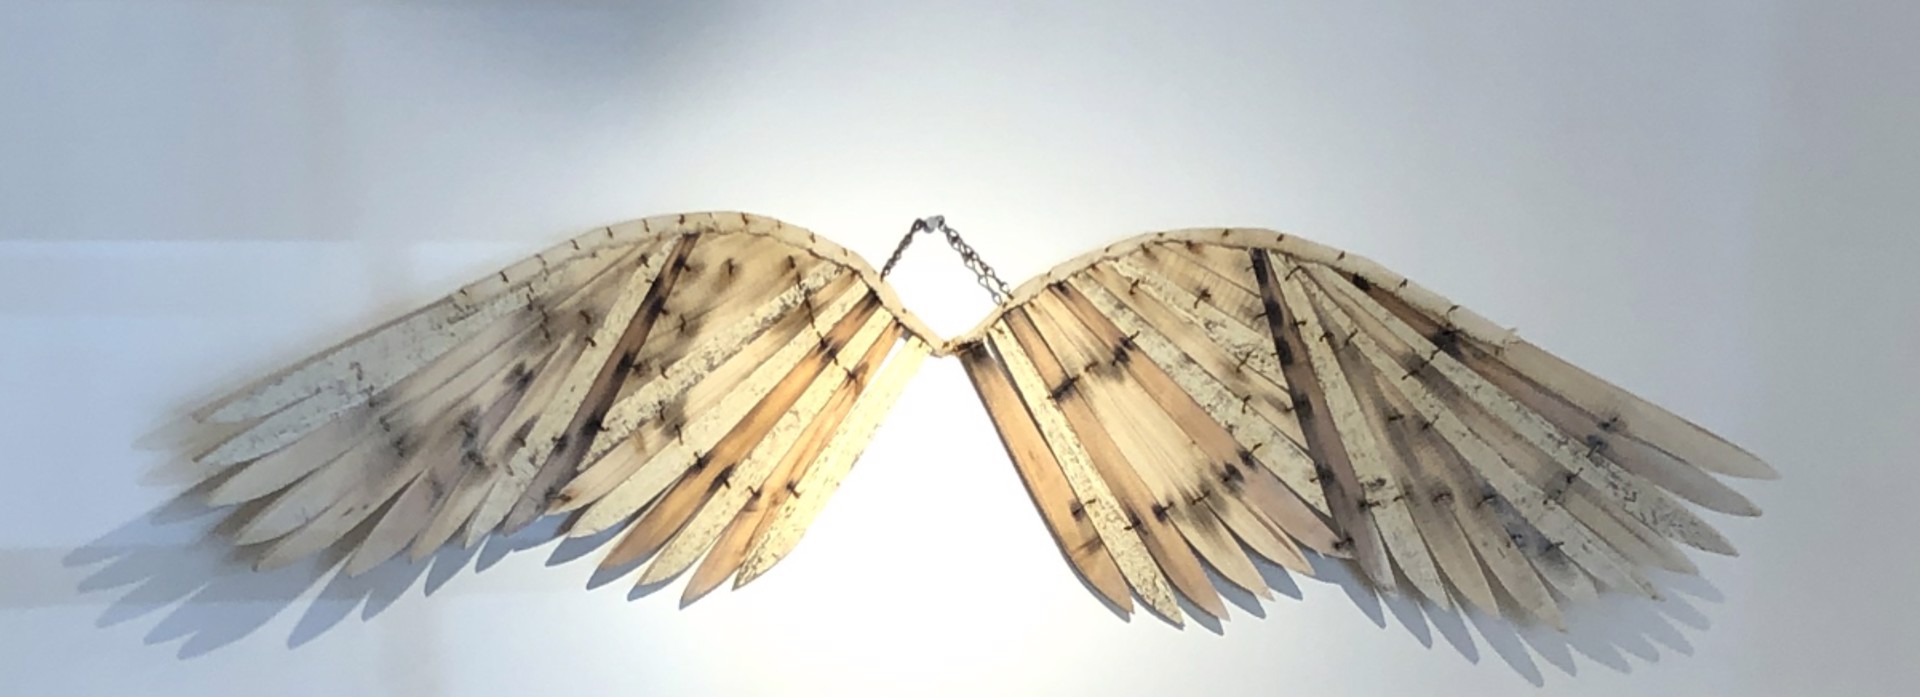 Whooping Crane Wings by Geoffrey Gorman